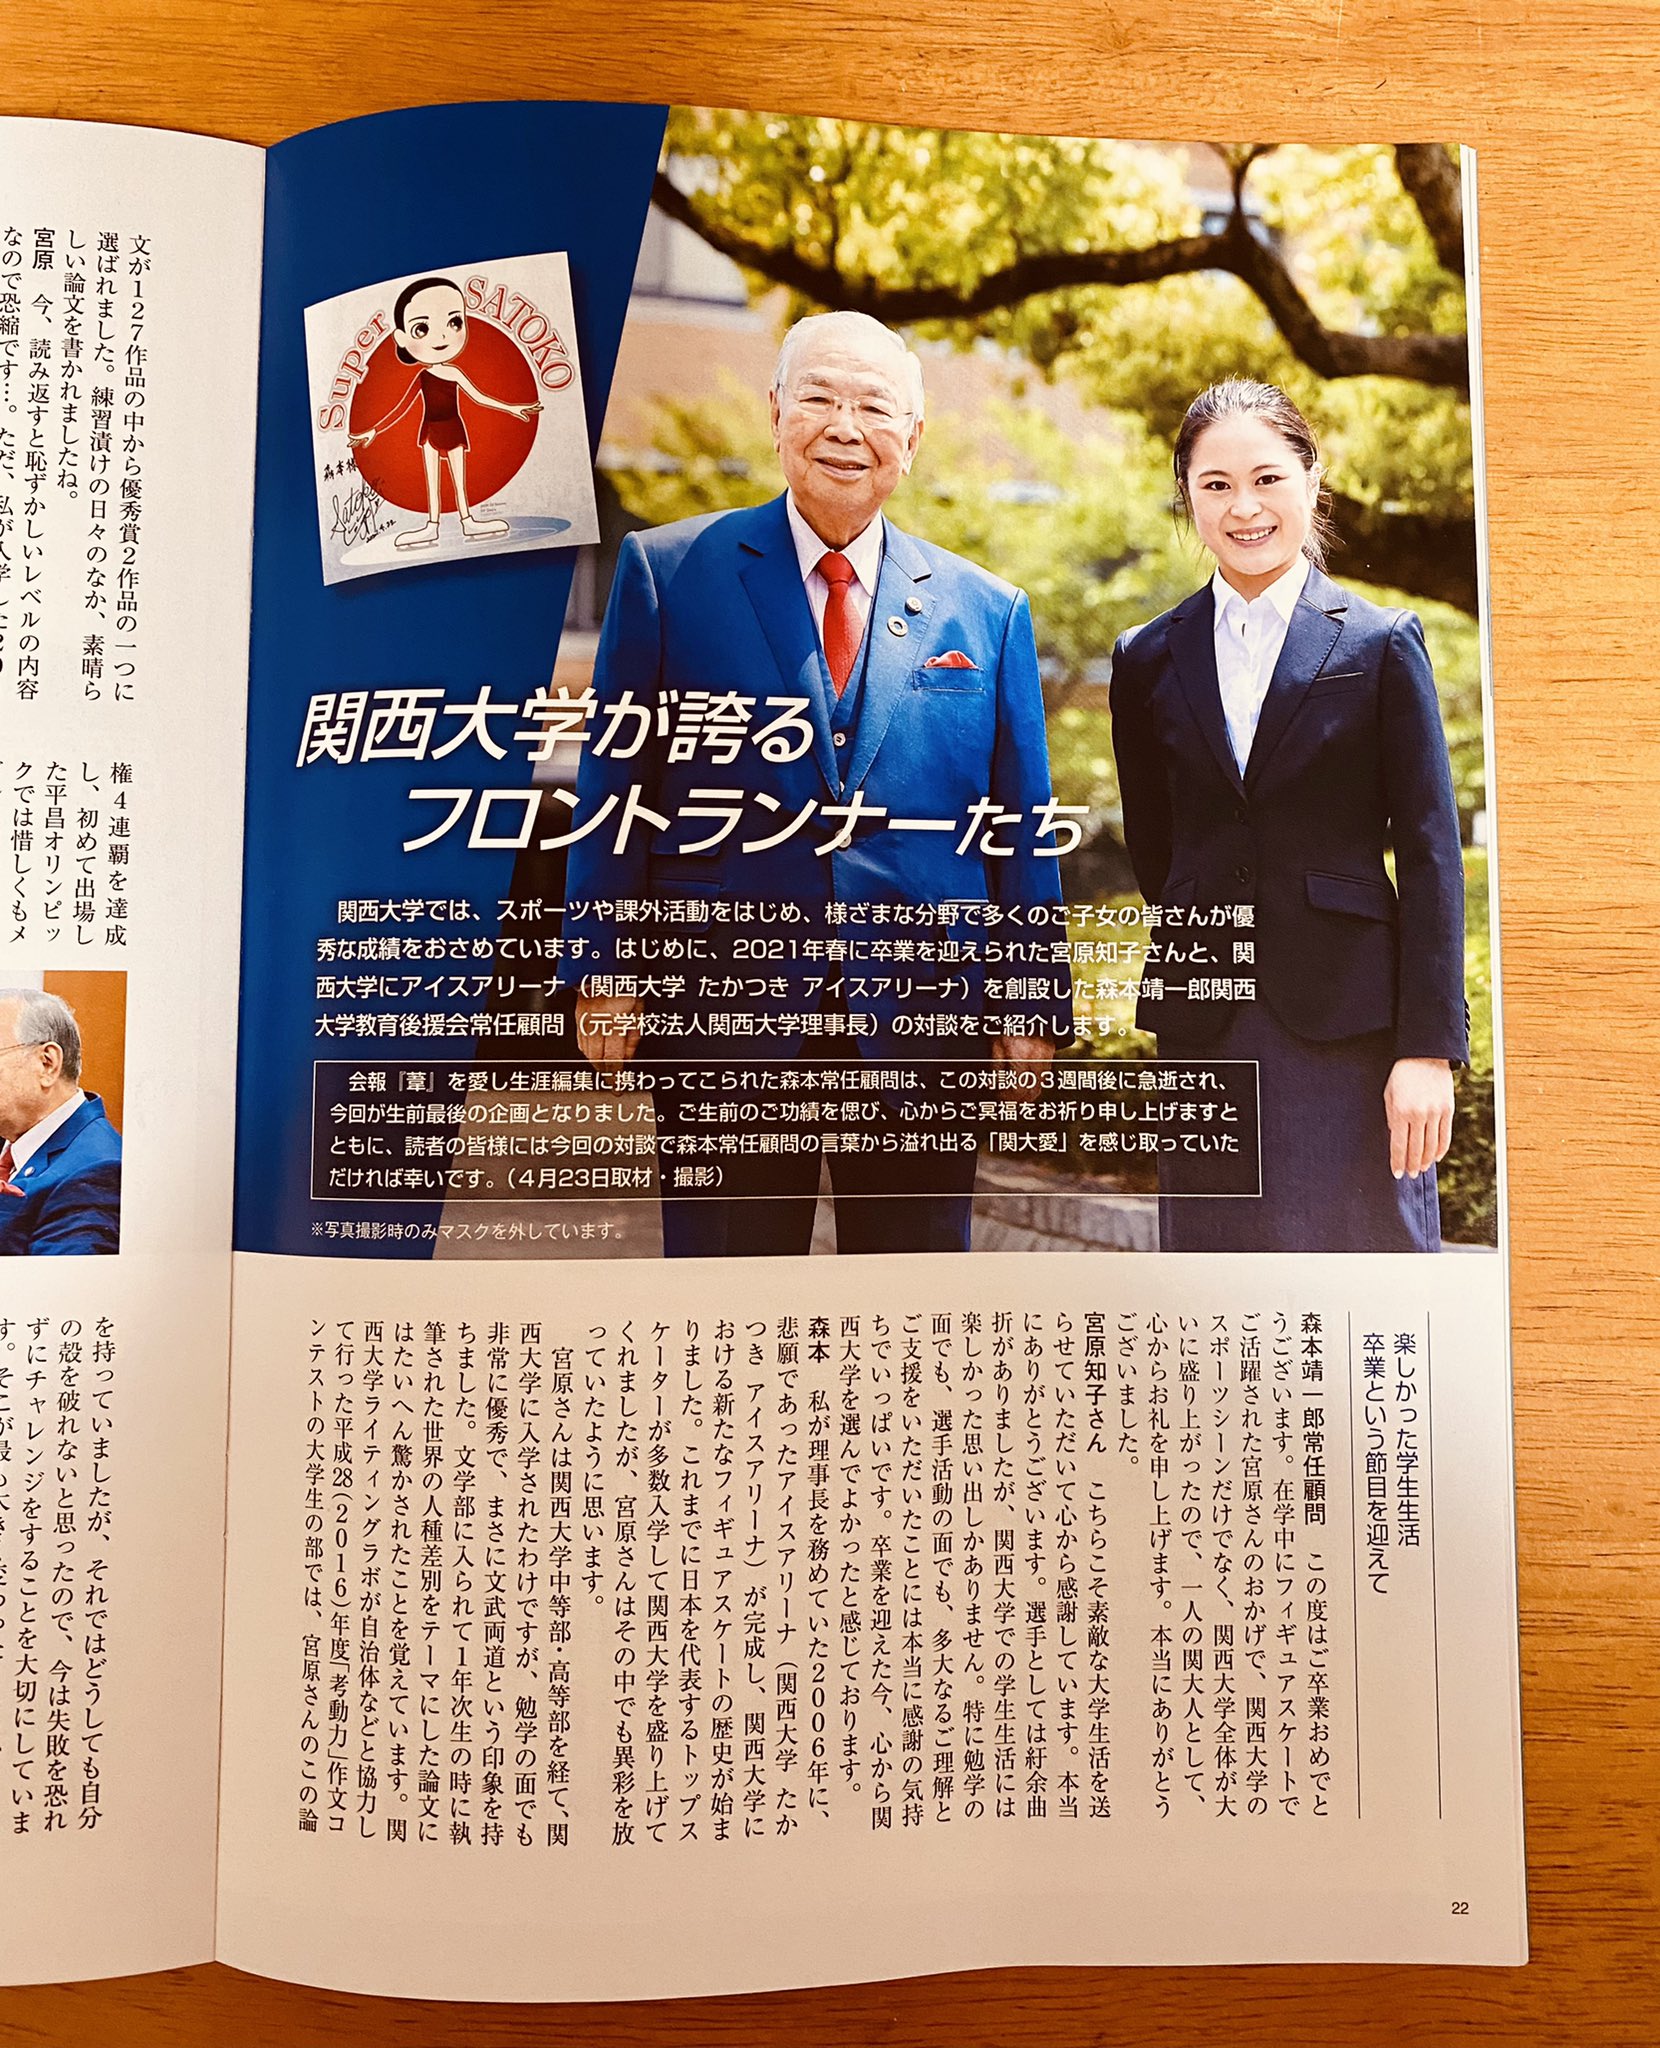 関西大学後援会の冊子に掲載された元理事長_レス32の画像_0